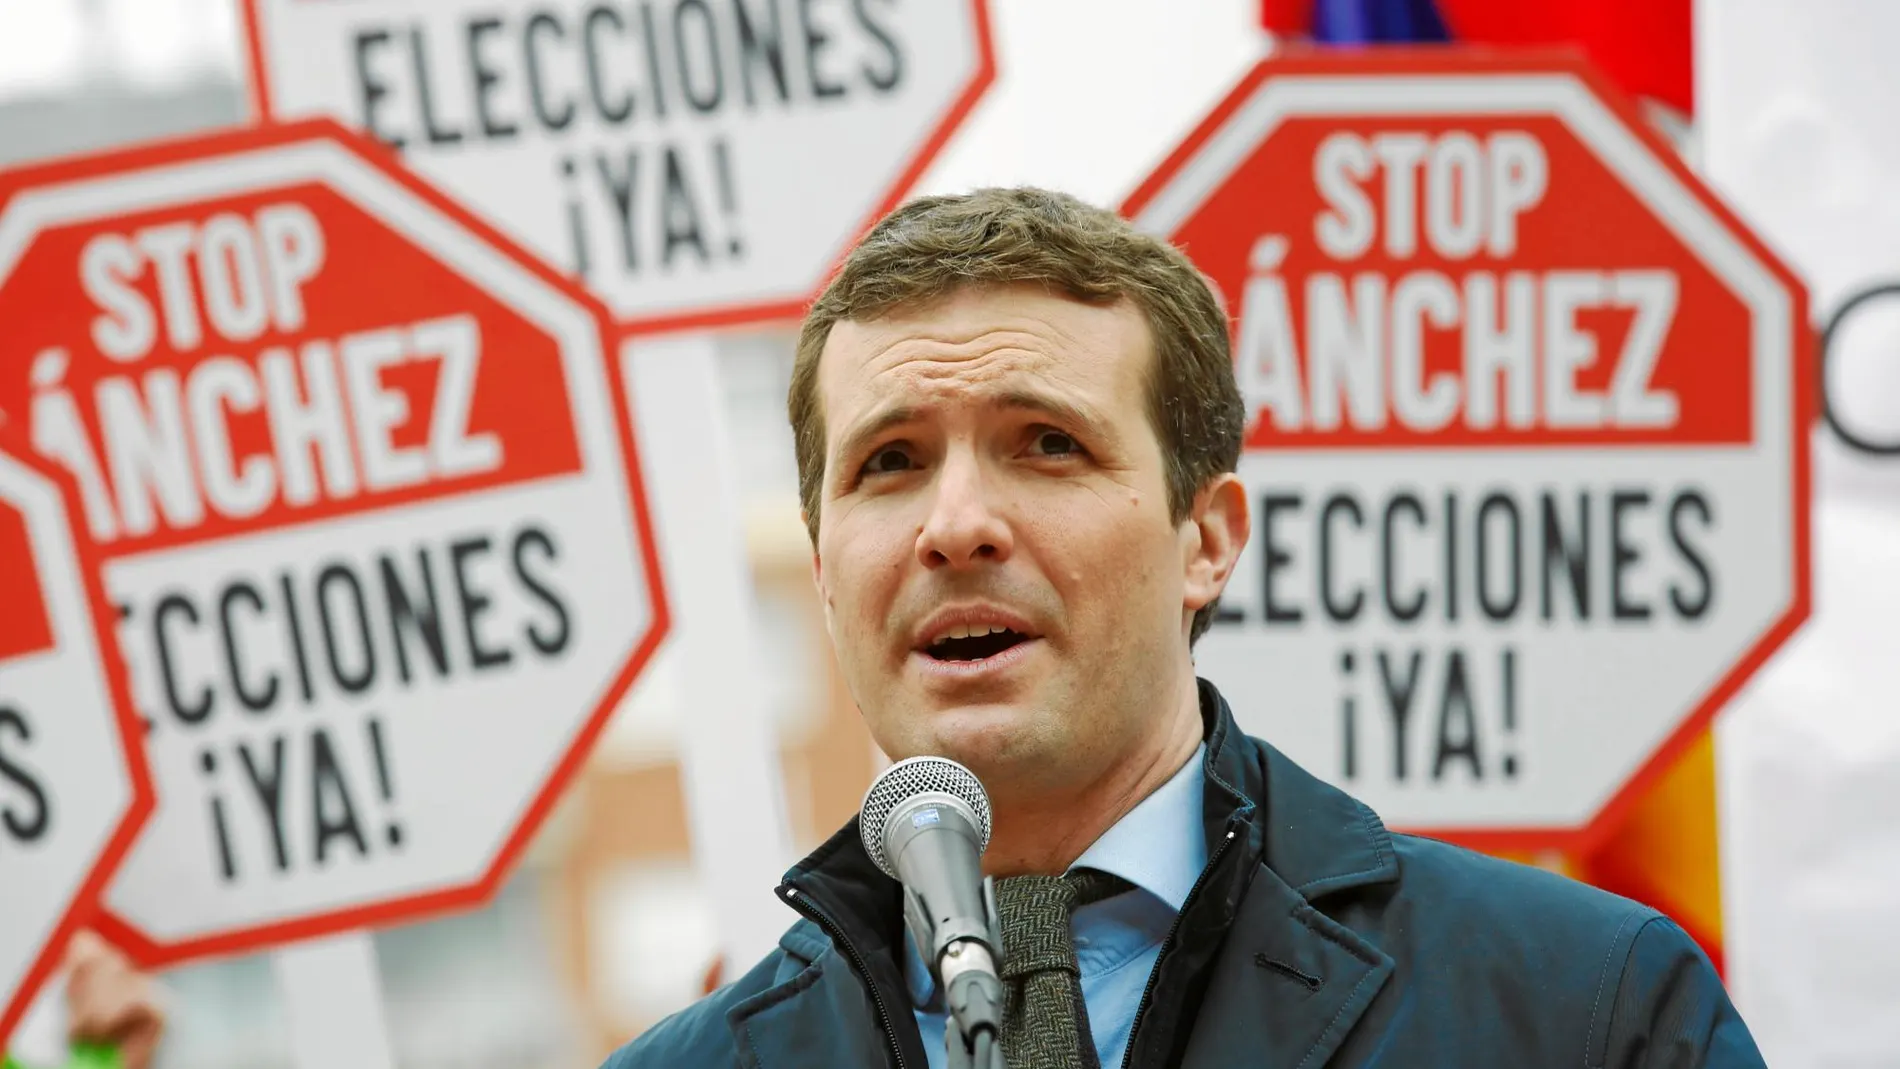 El líder del PP, Pablo Casado, durante la manifestación que se celebró el domingo en Madrid / Javier Fdez. Largo